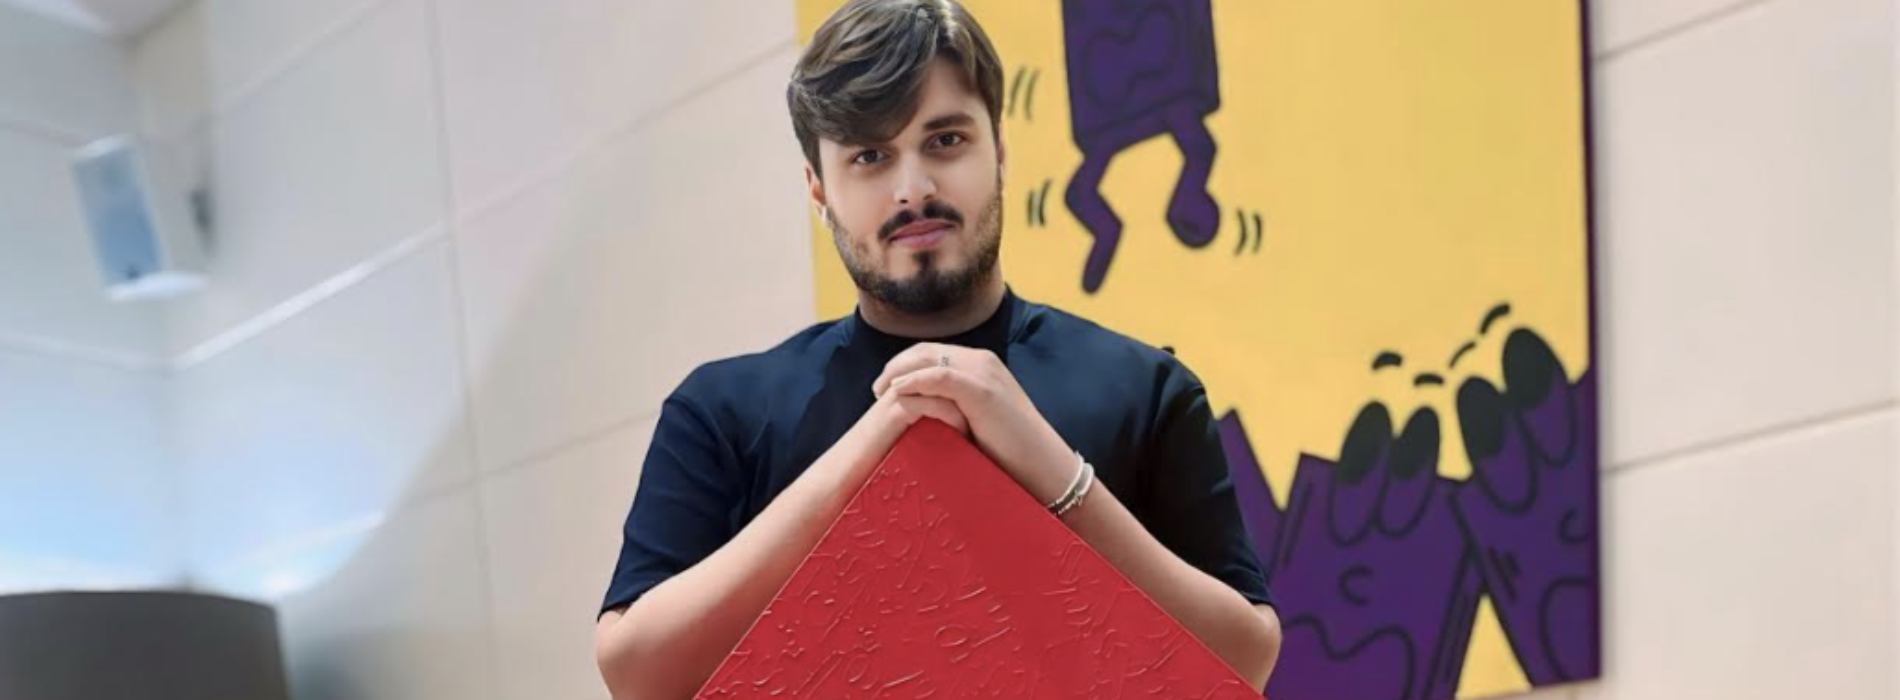 Mostra artisti pop a Orzinuovi, espone il casertano Marco Izzo